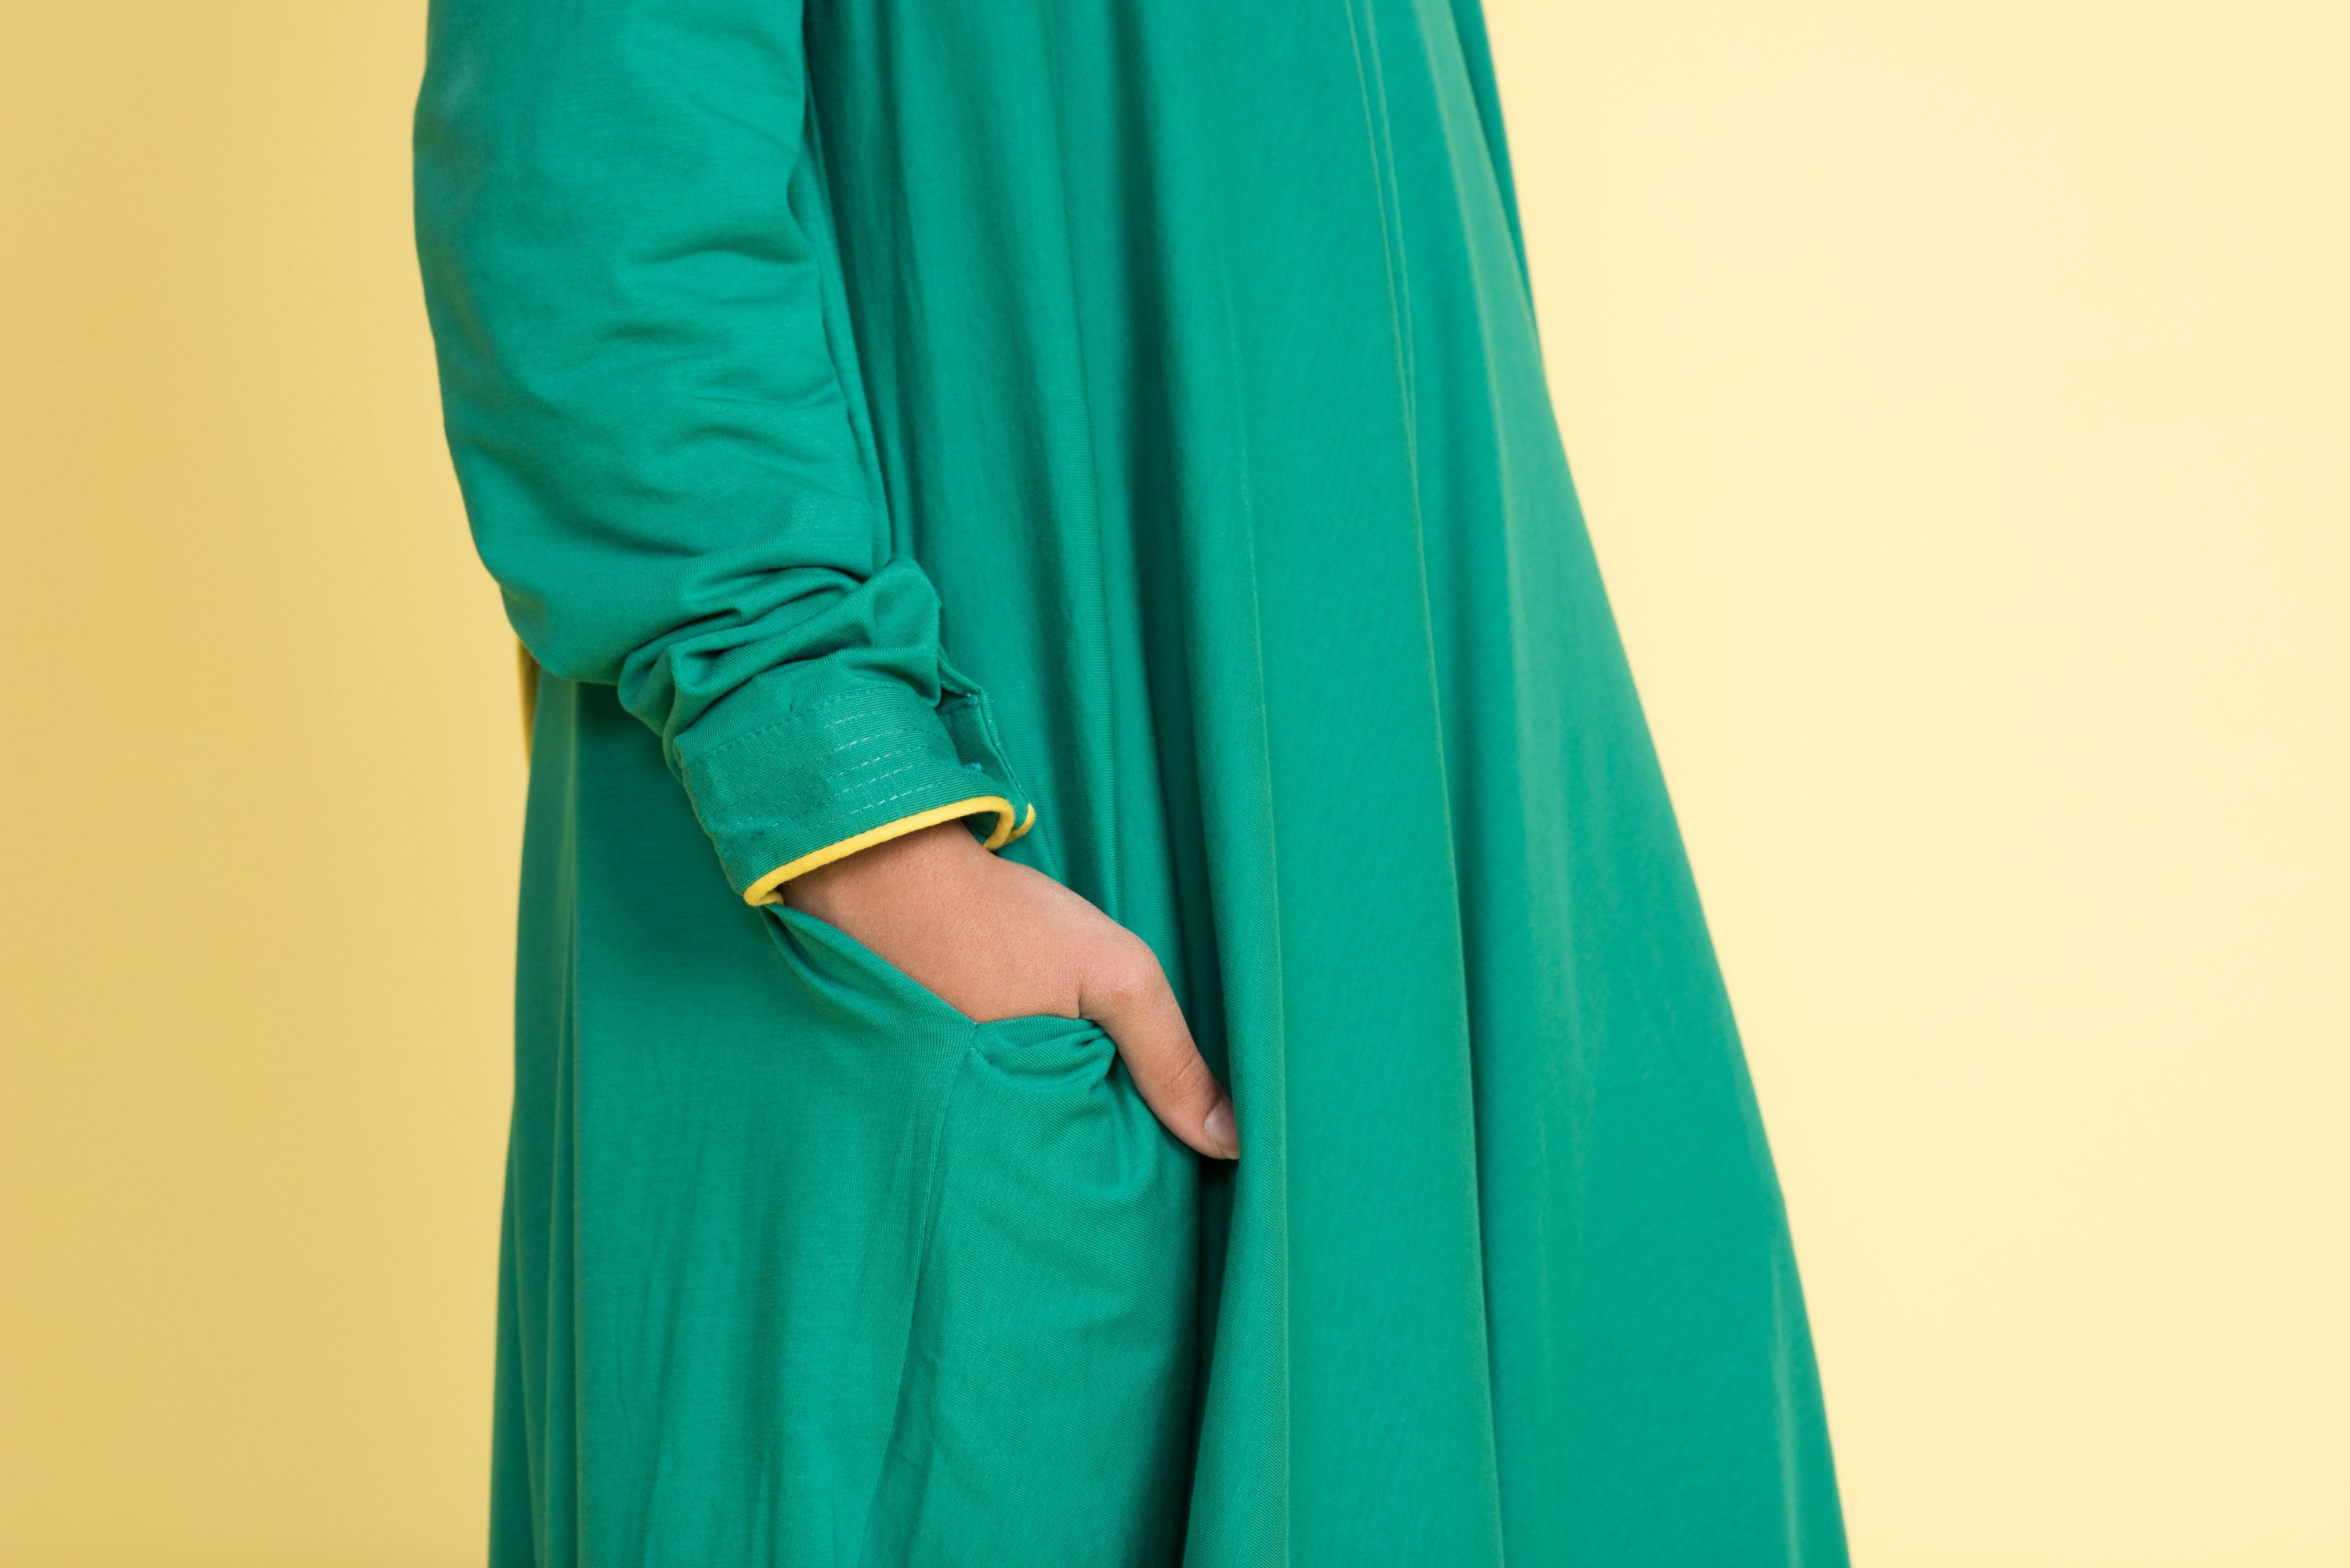 Girl's Green Corsage Abaya